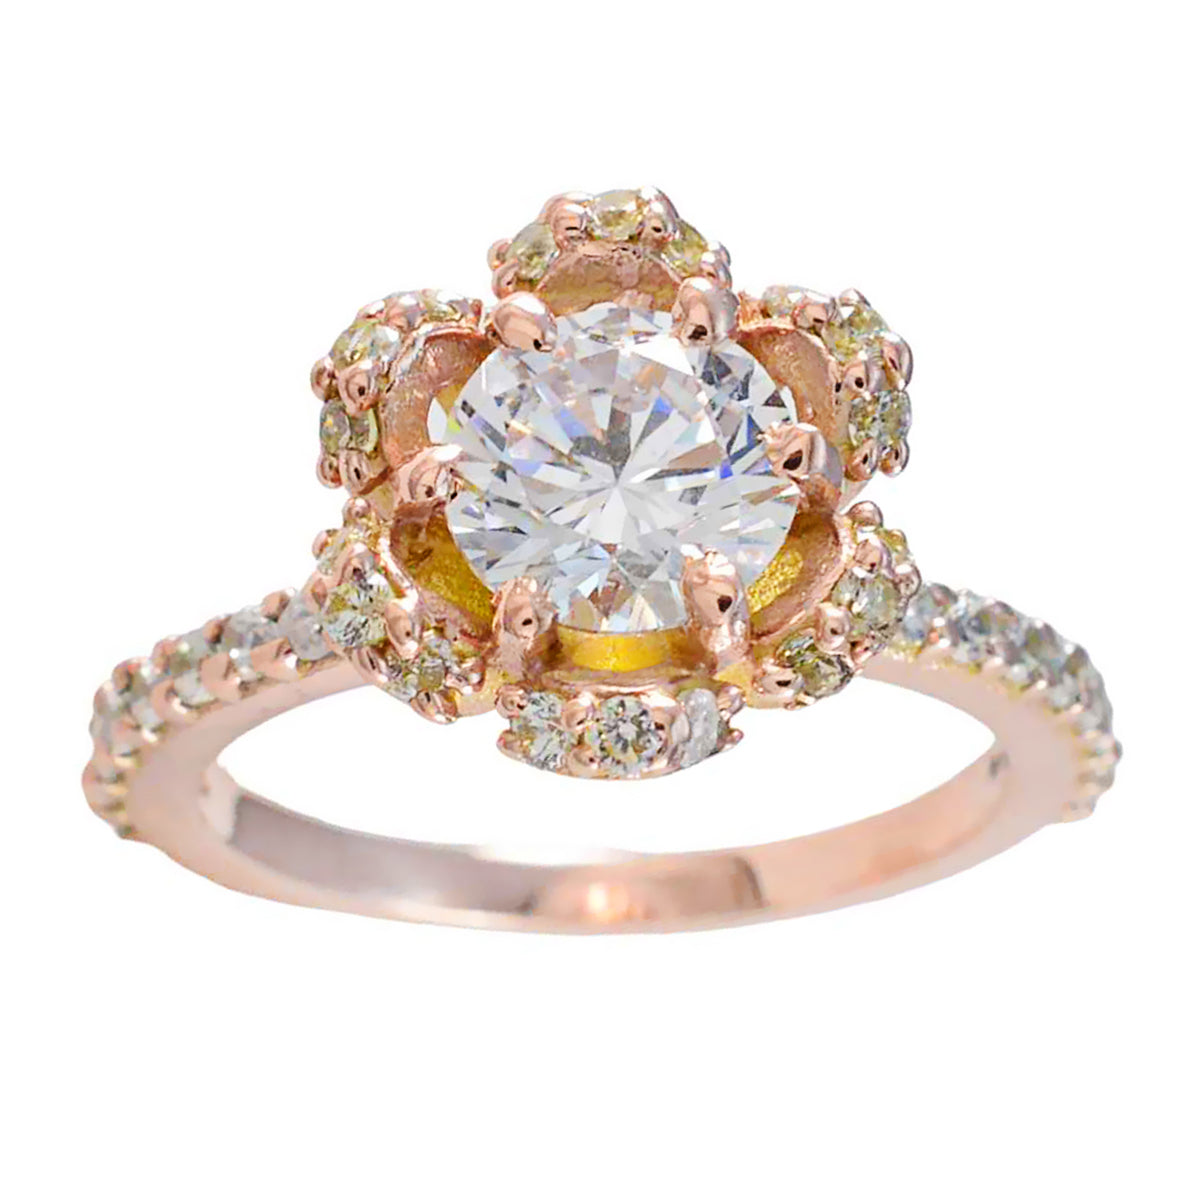 Riyo Wunderschöner Silberring mit Rosévergoldung, weißem CZ-Stein, runde Form, Krappenfassung, Modeschmuck, Ehering